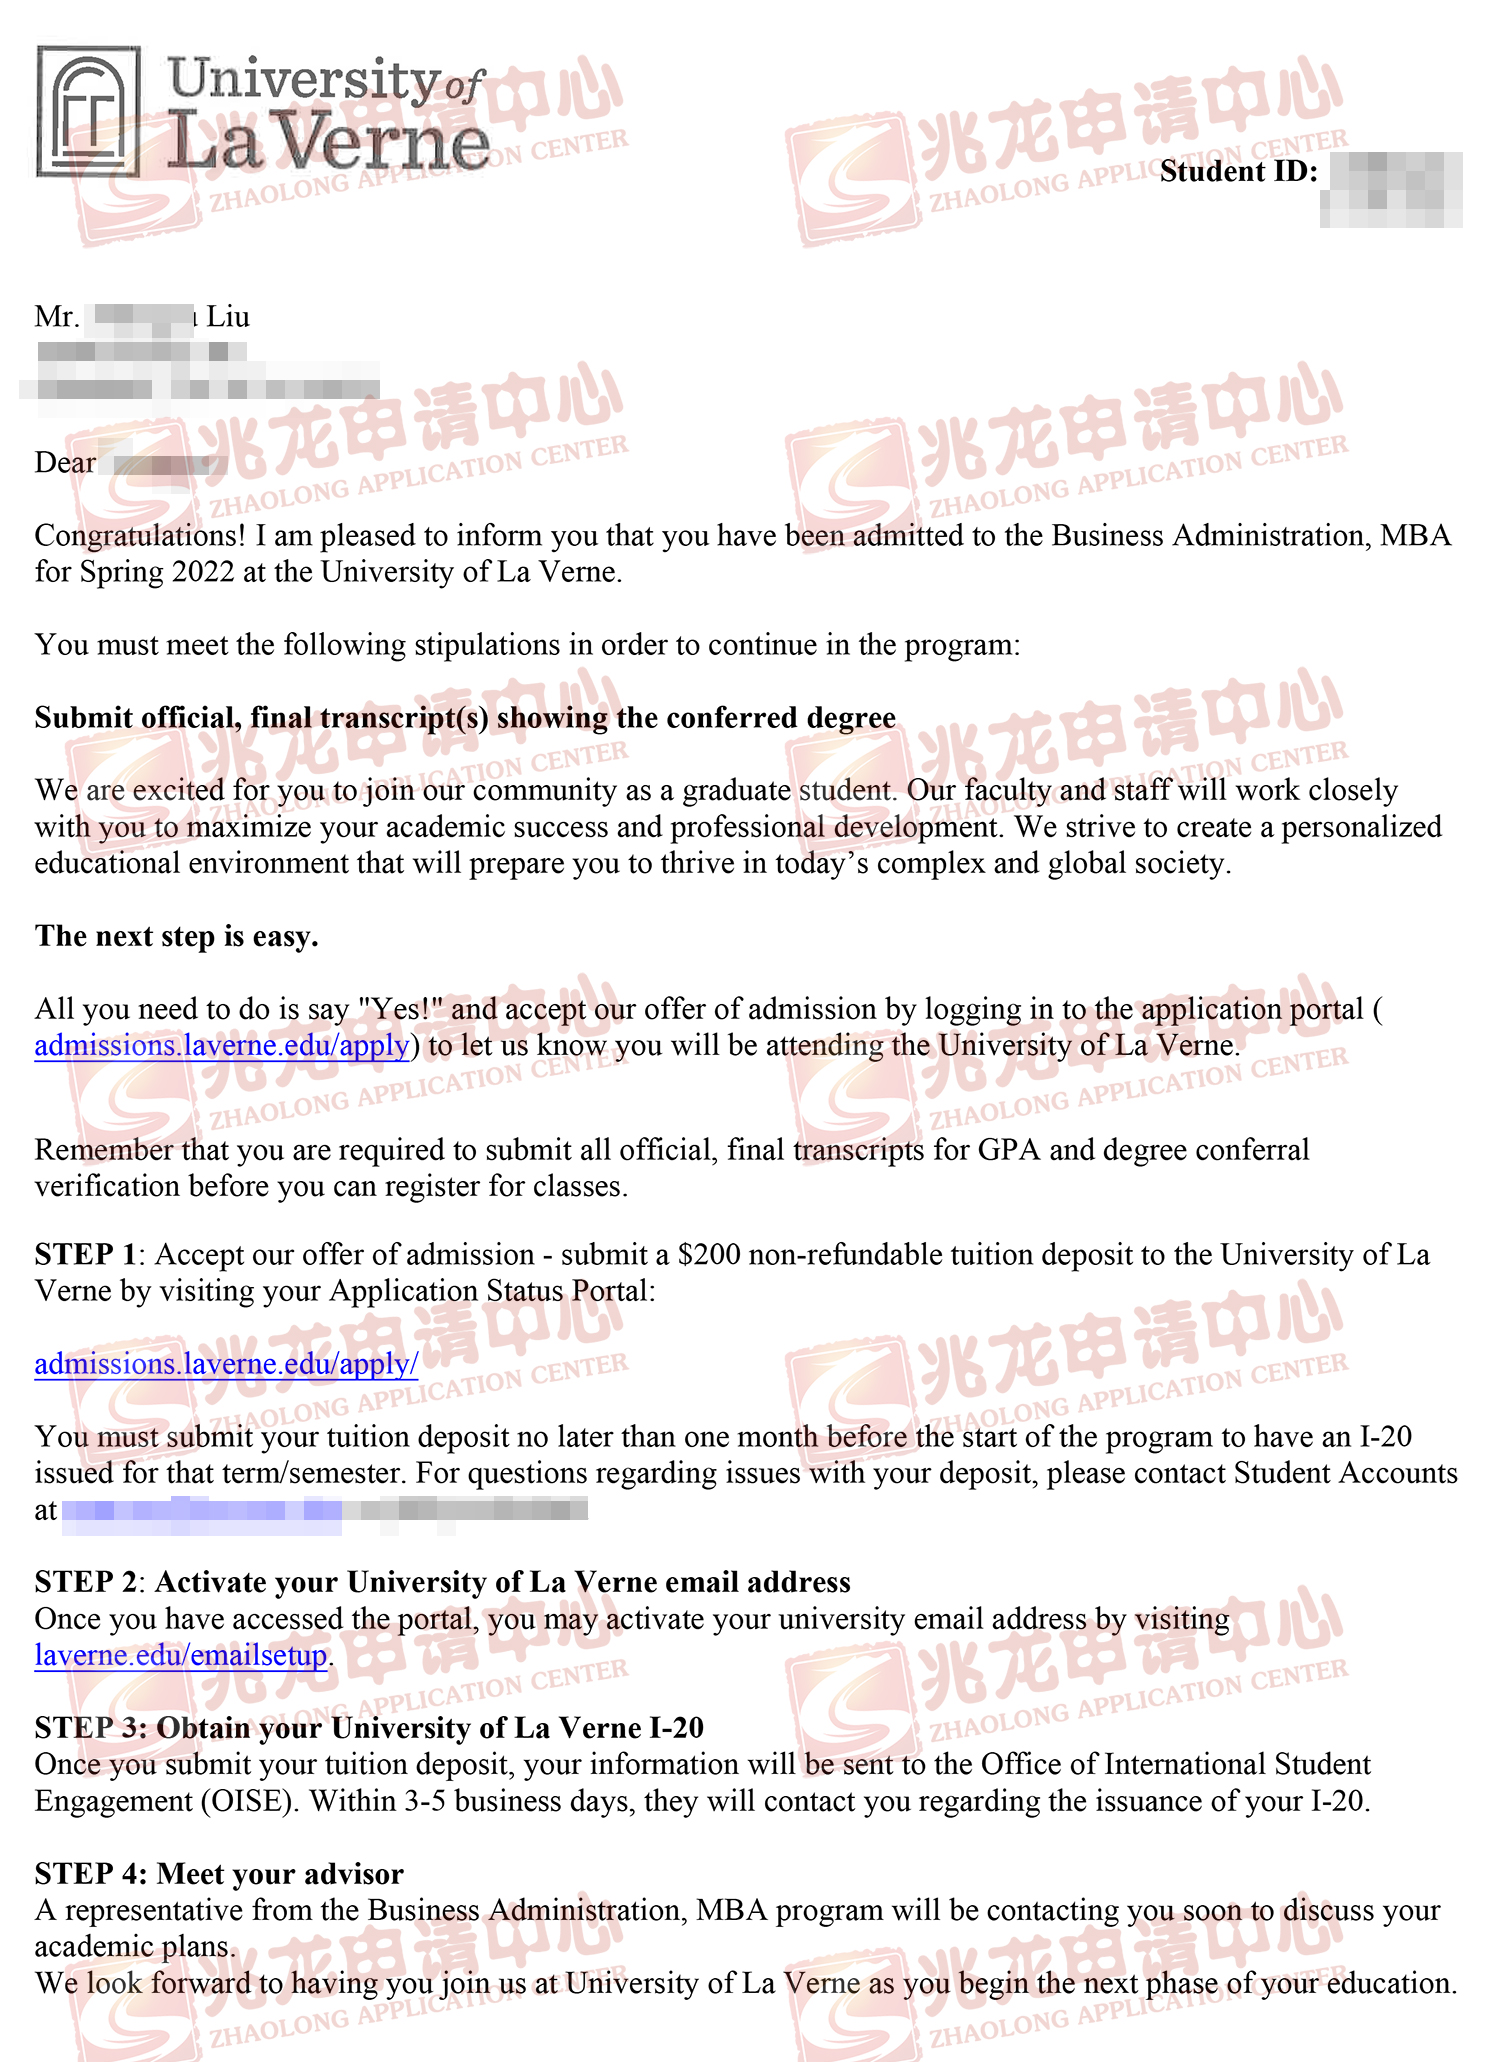 刘xiangyu美国拉文大学MBA-offer-兆龙留学.jpg